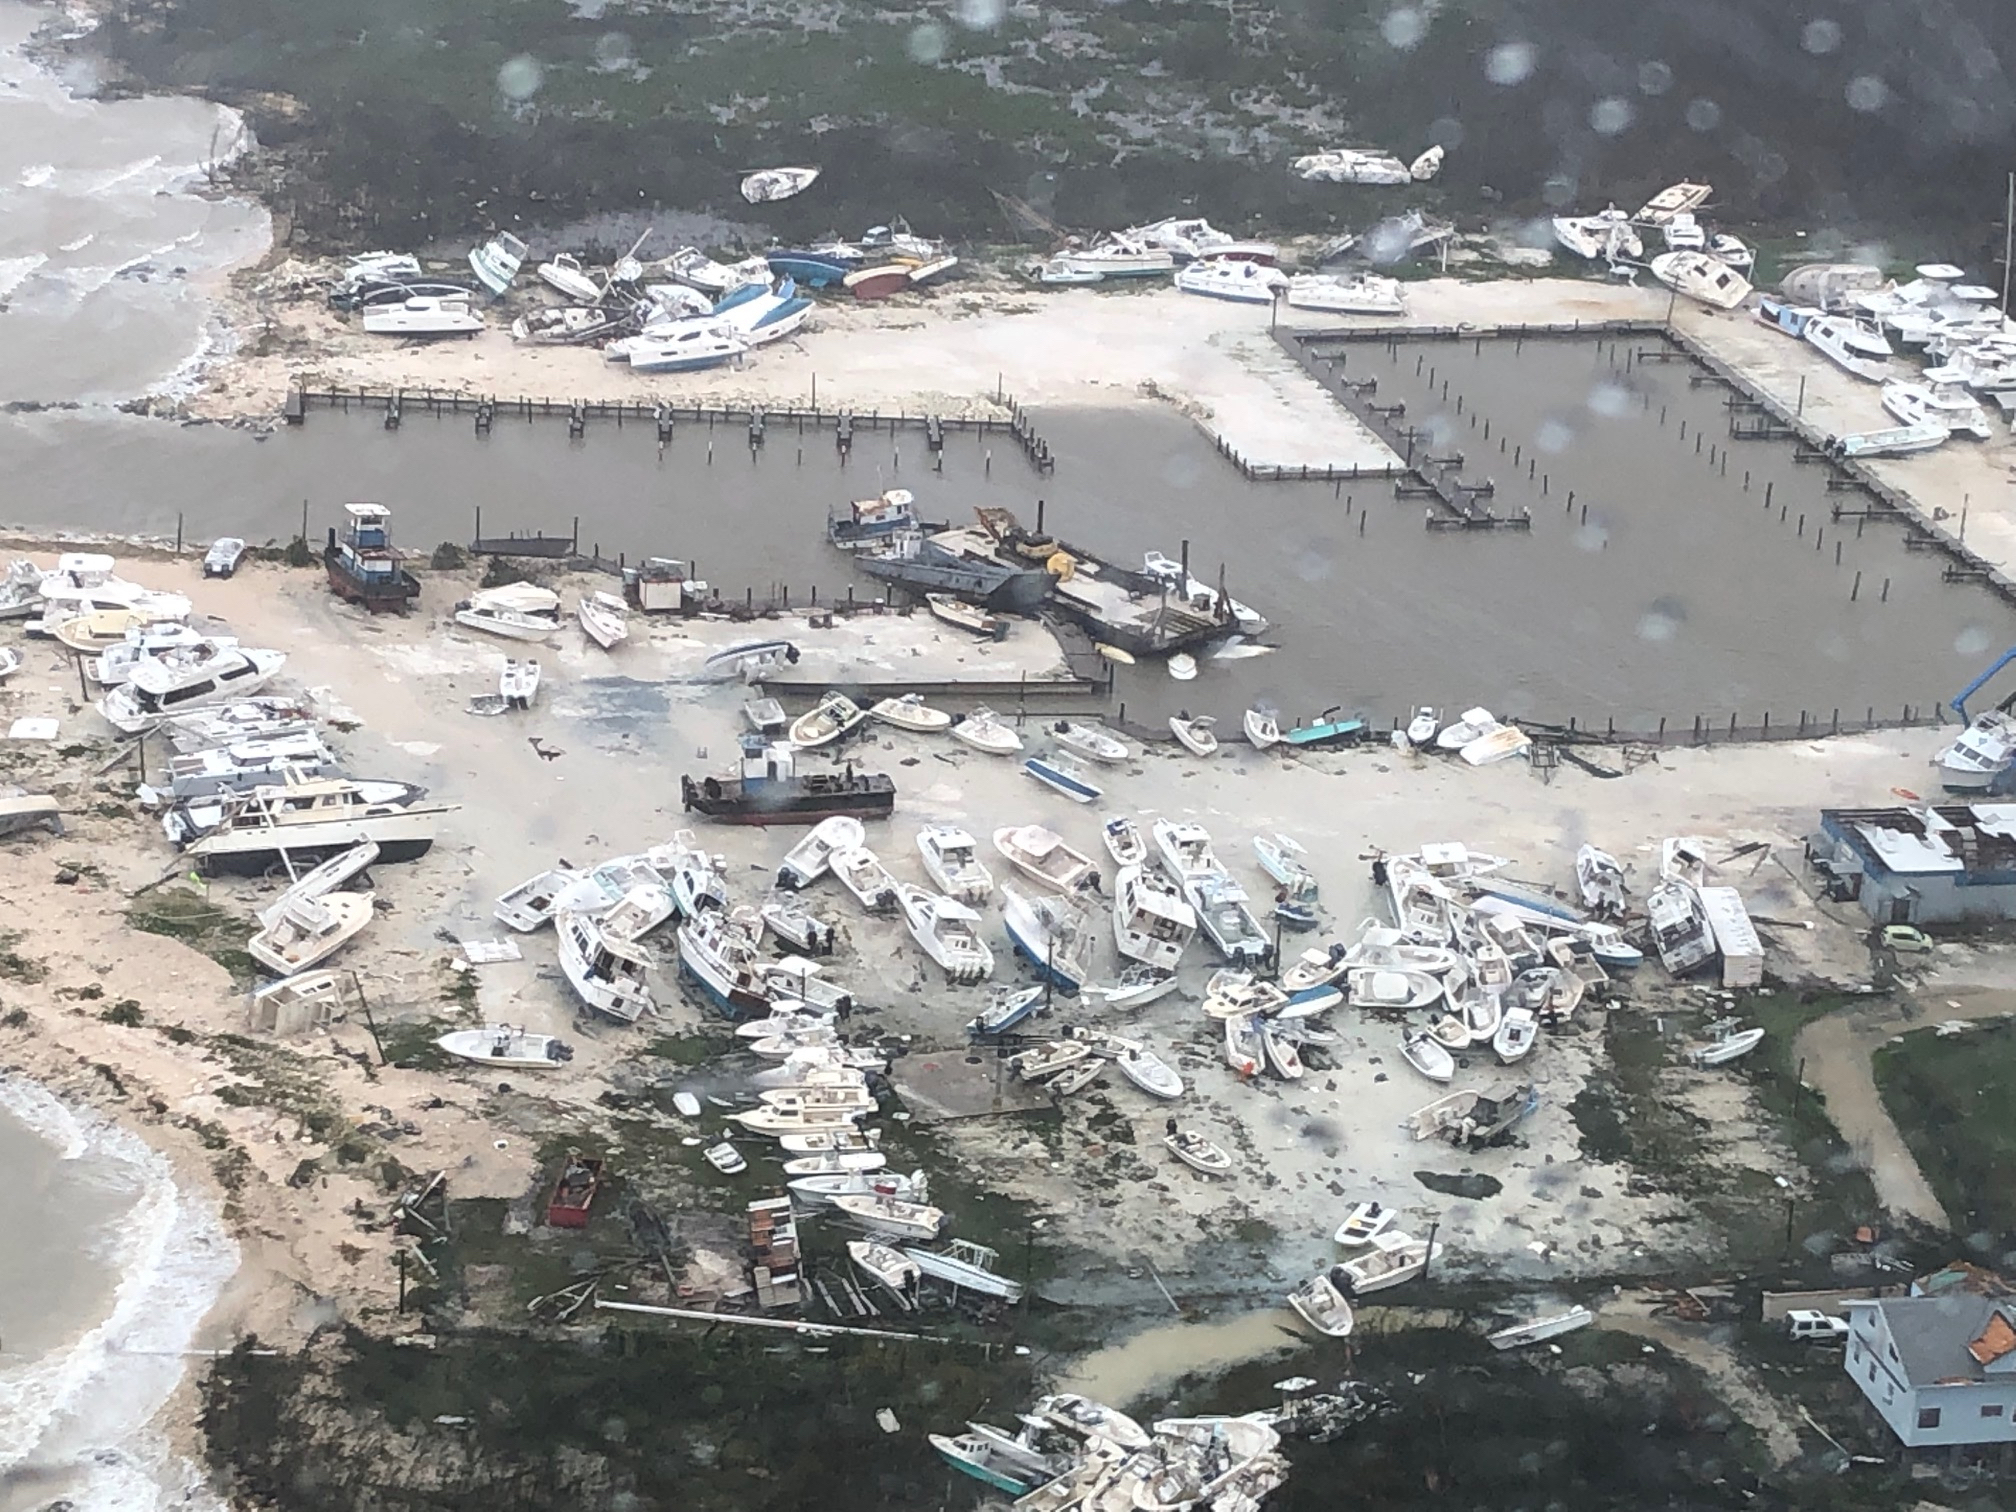 Itt vannak az első képek és videók a Dorian hurrikán pusztításáról